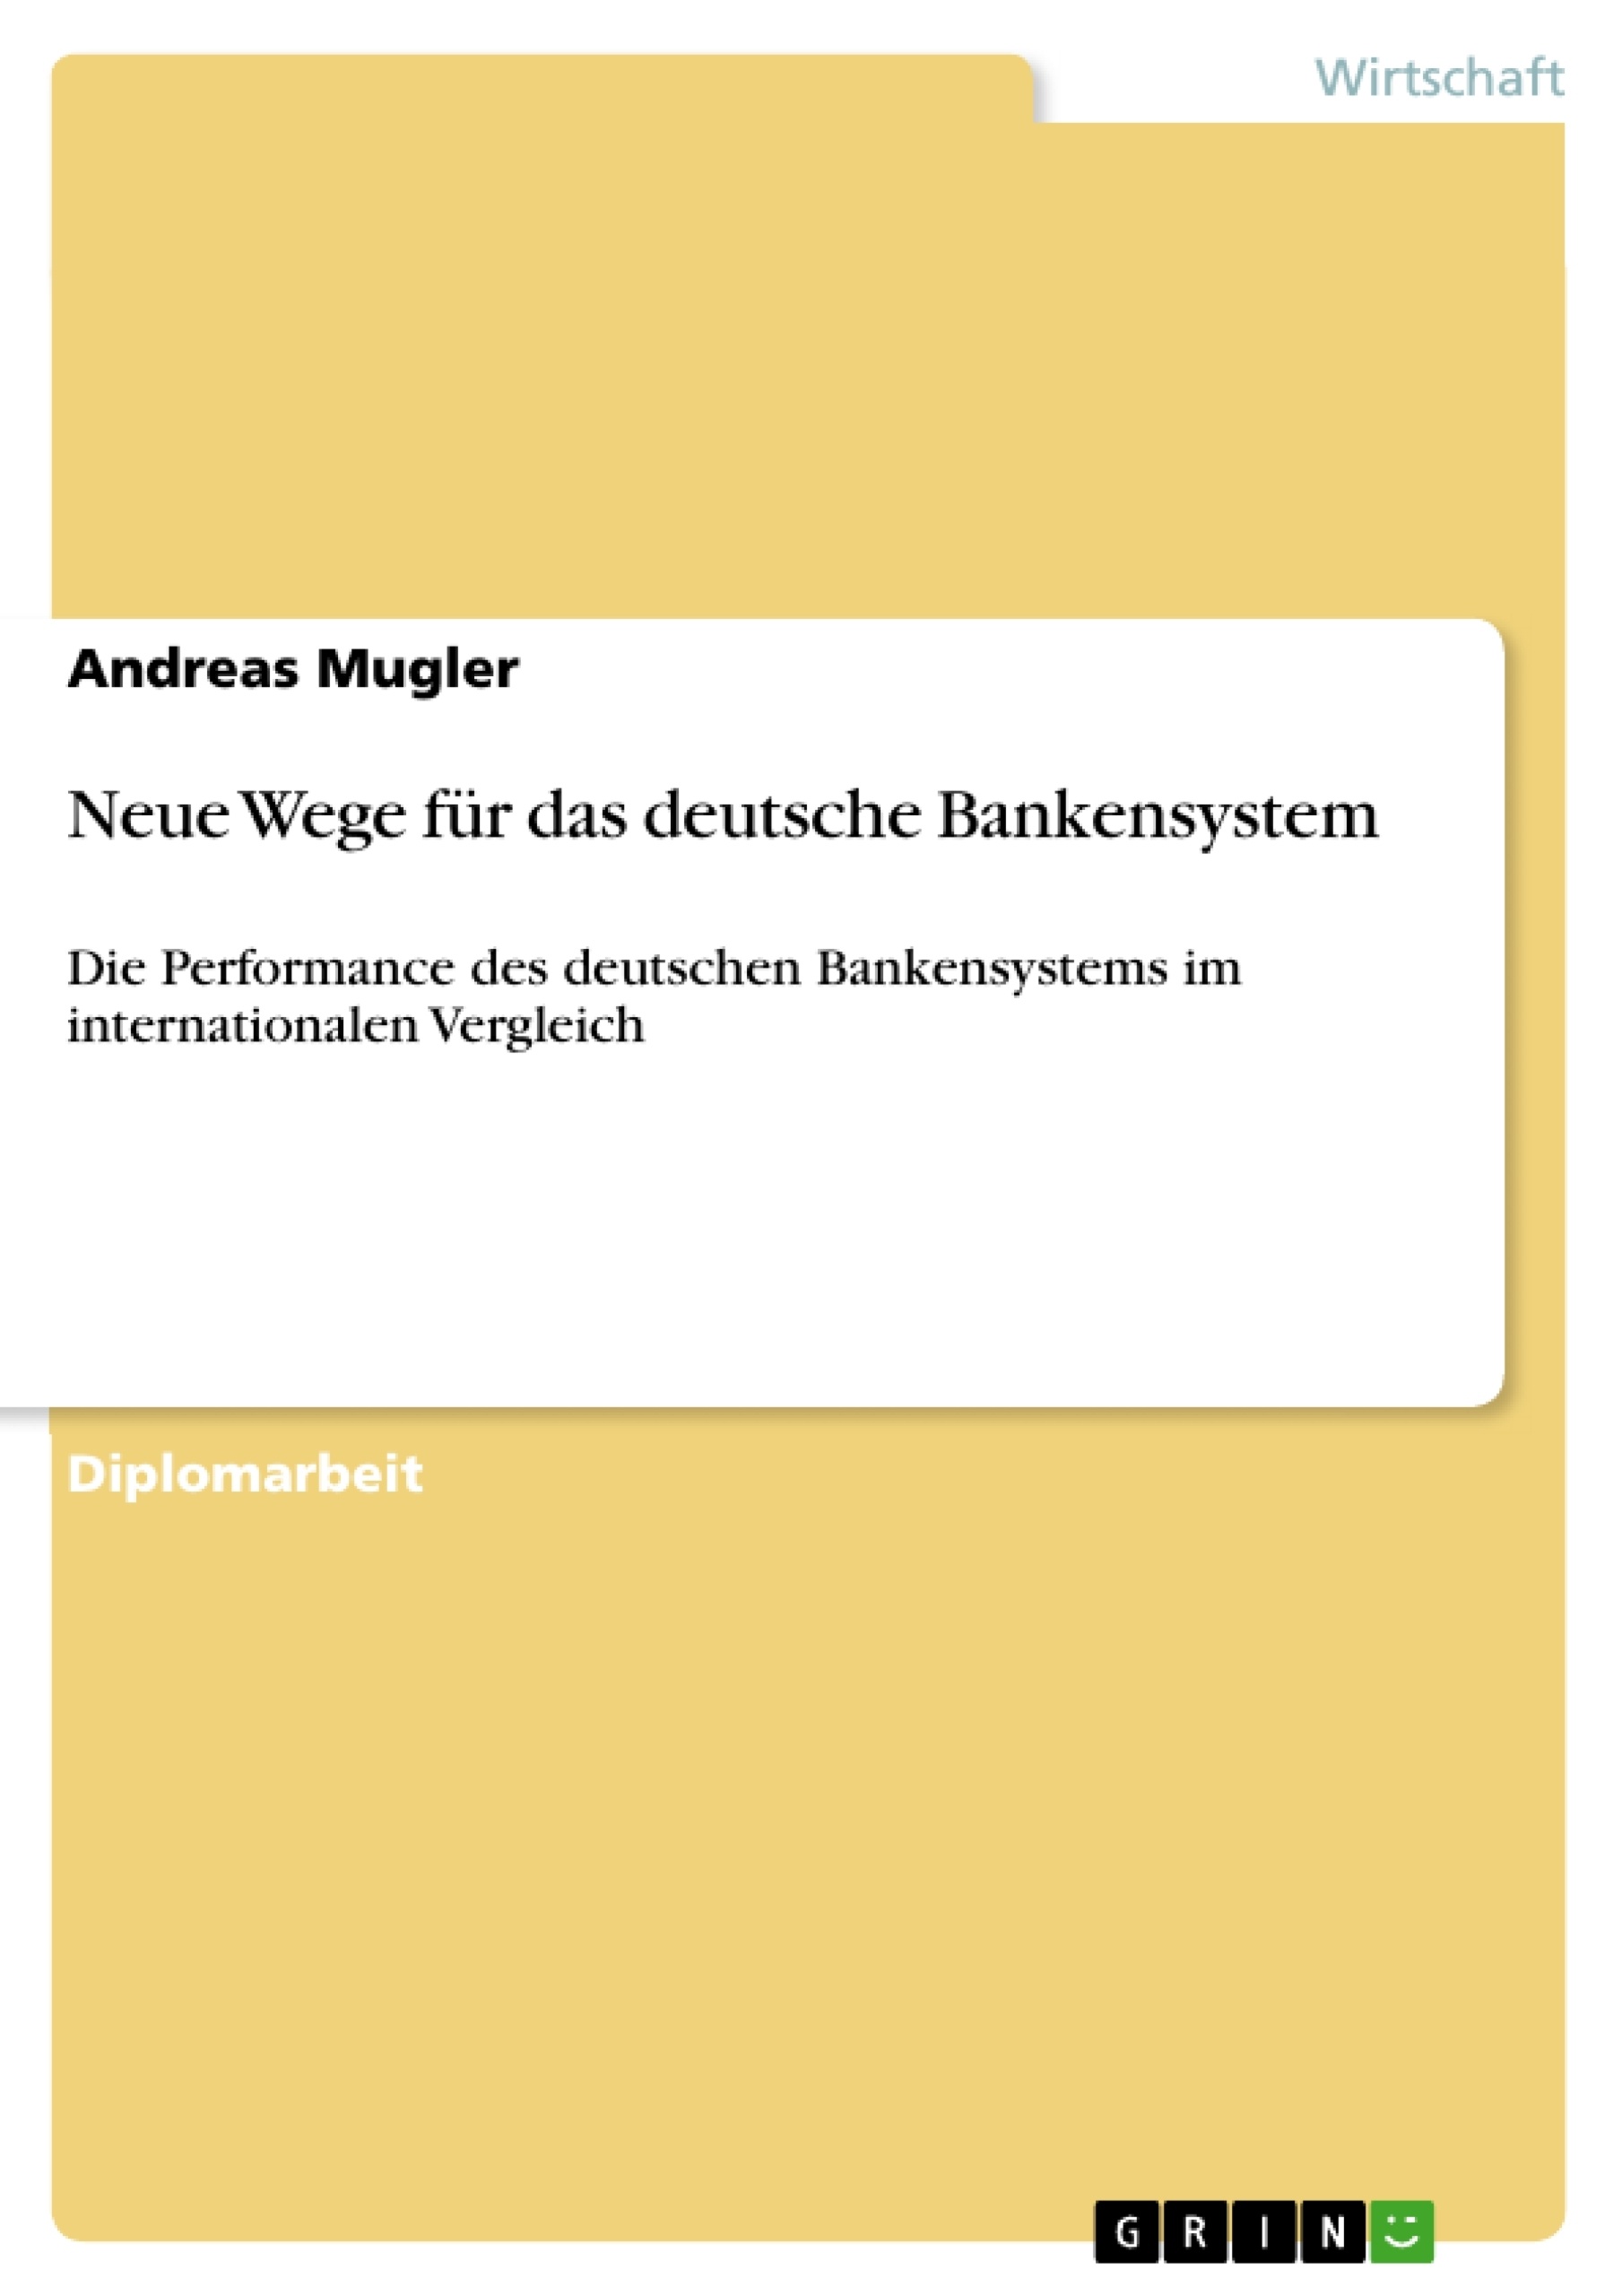 Título: Neue Wege für das deutsche Bankensystem